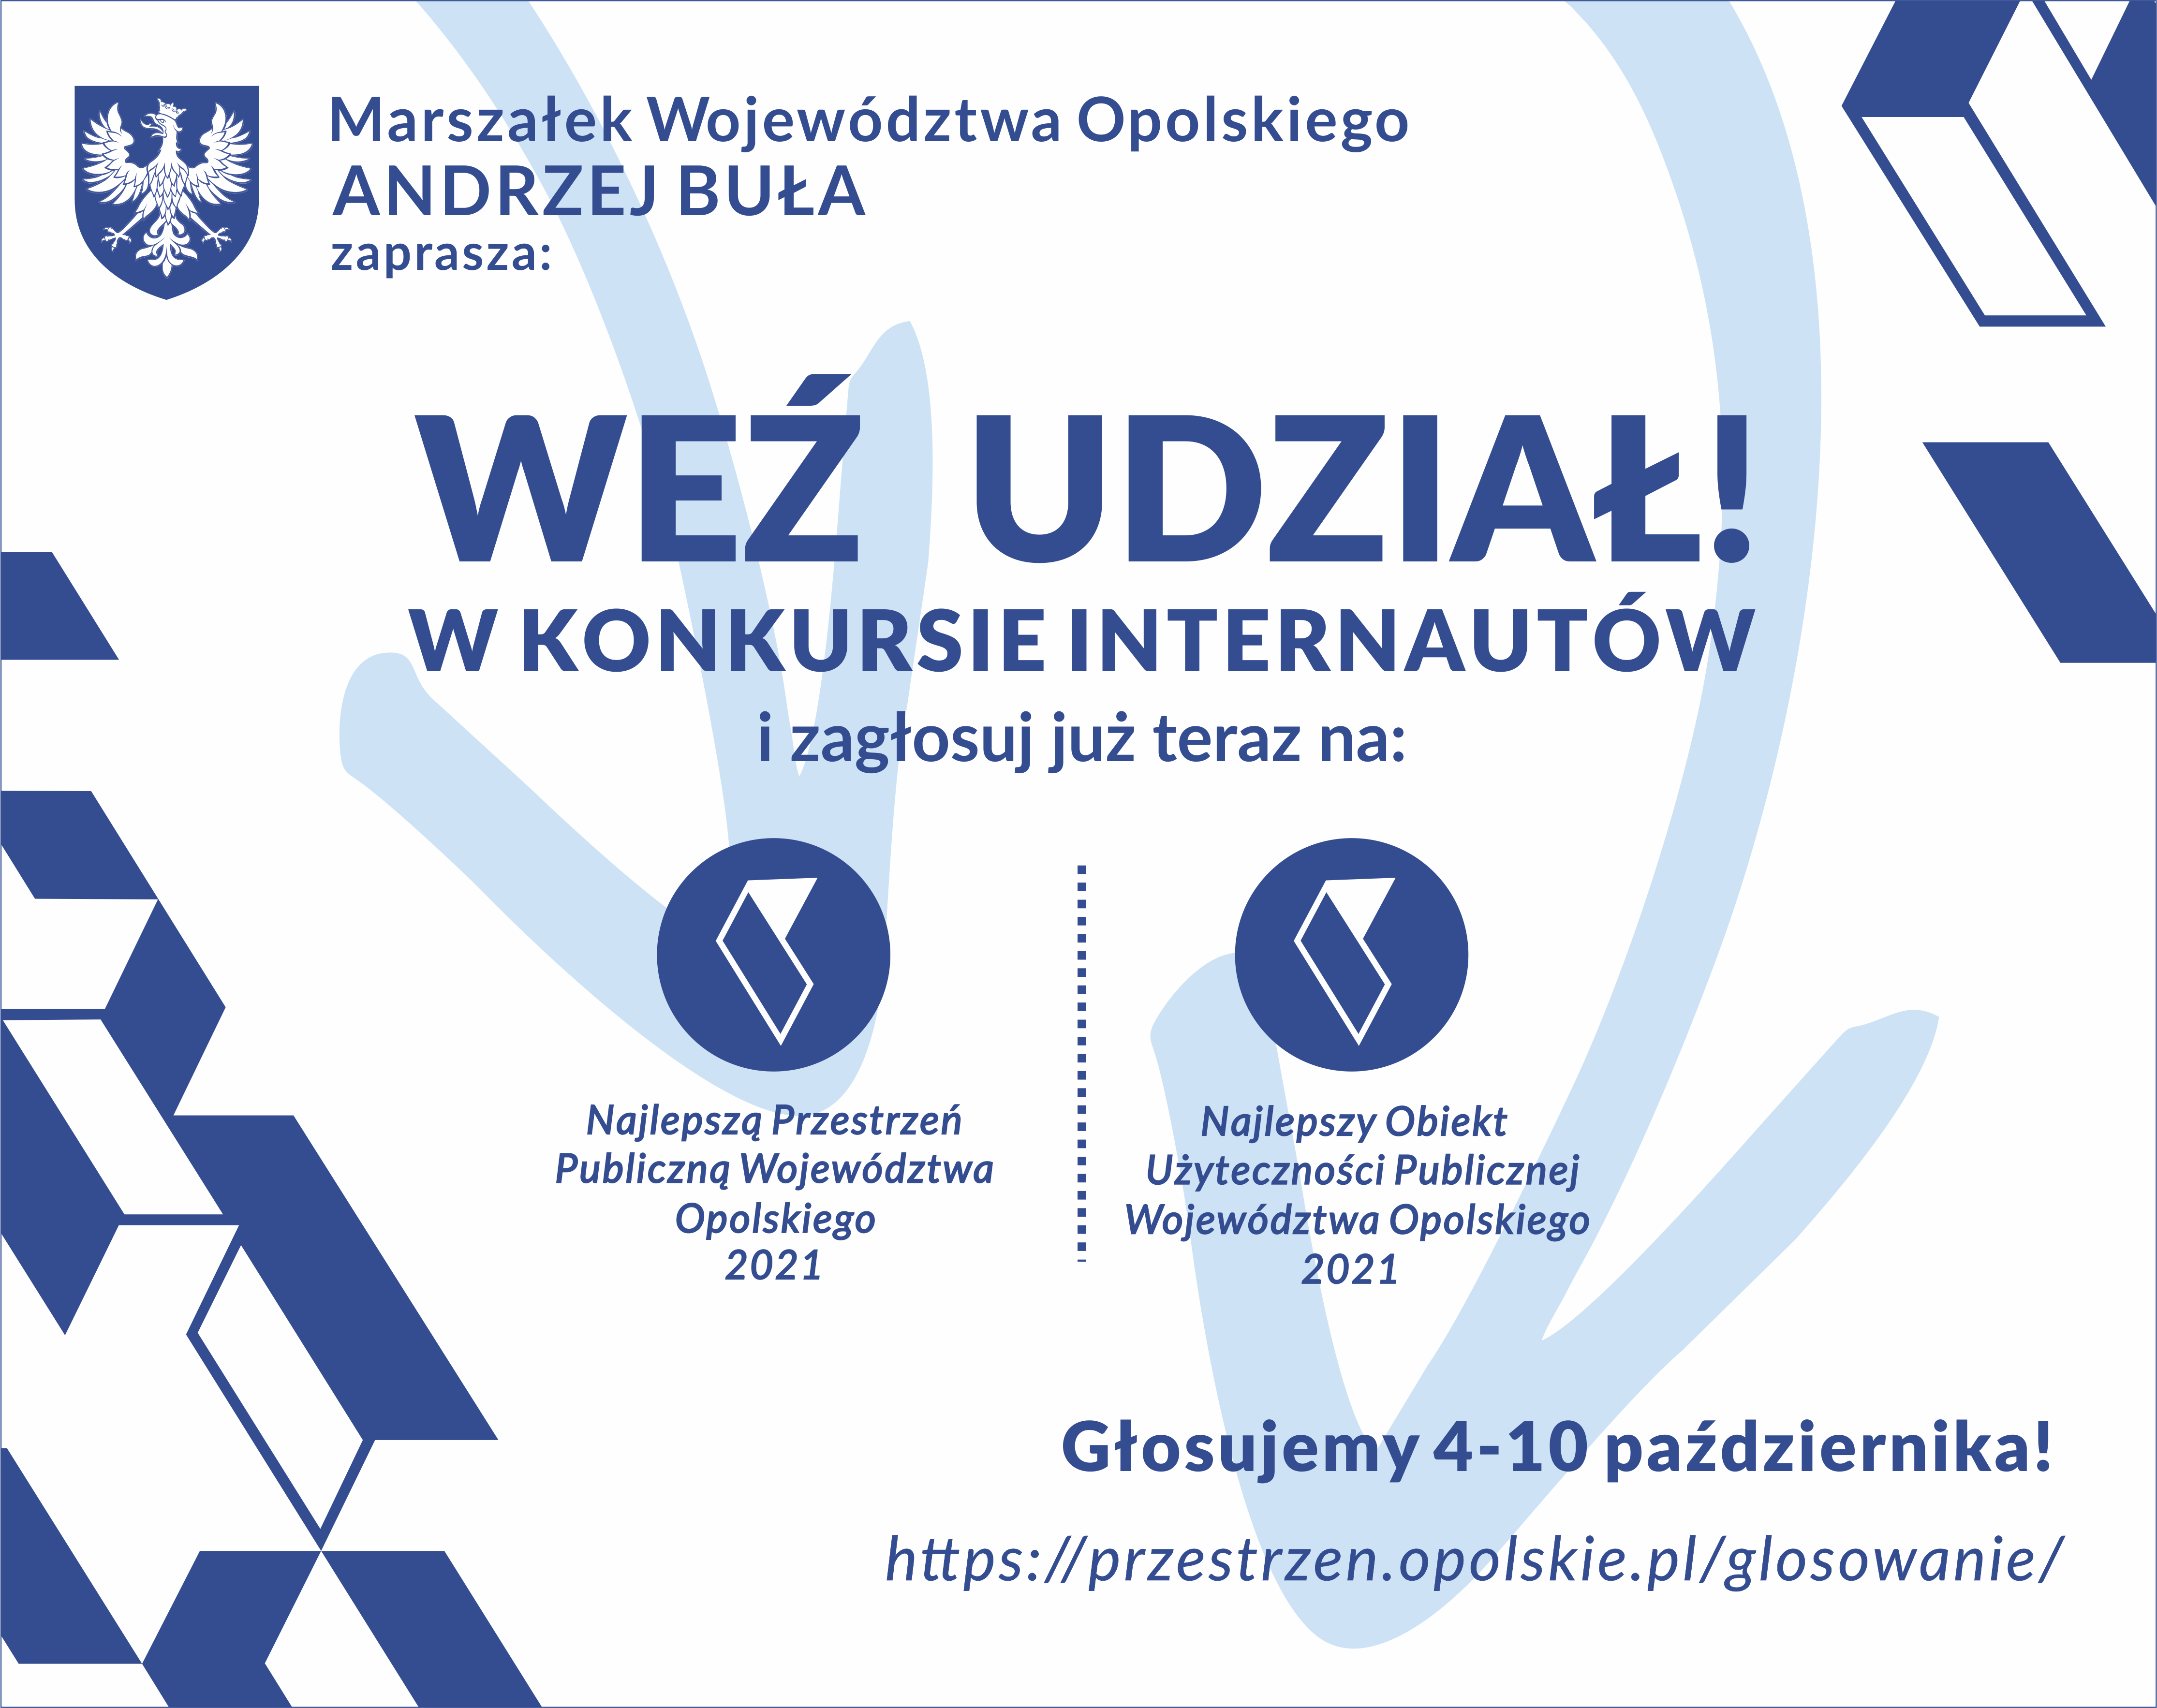 Najlepsza Przestrzeń Publiczna Województwa Opolskiego 2021 - do 10 października trwa głosowanie internautów